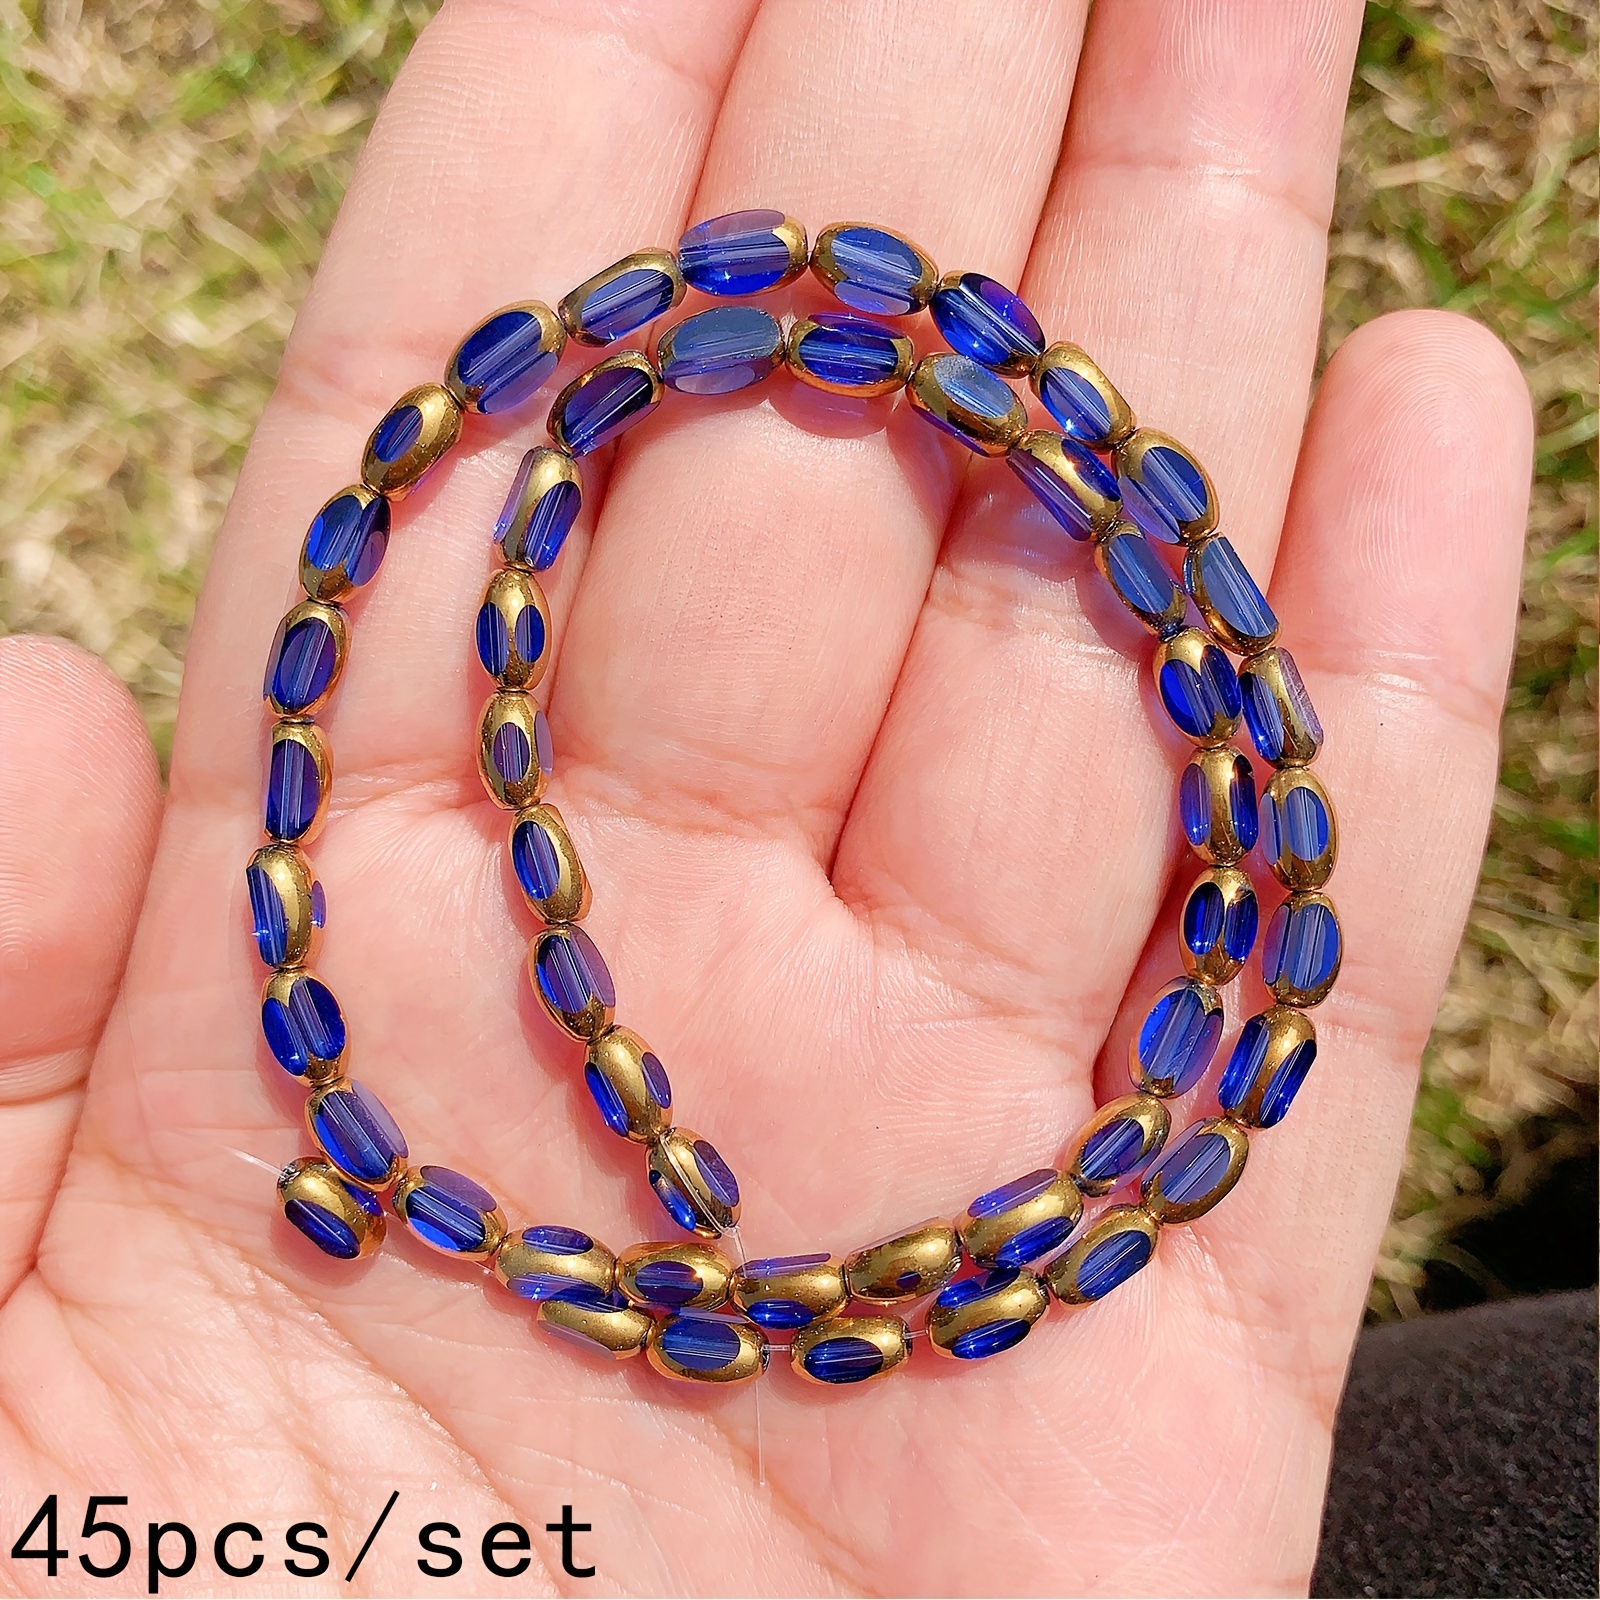  Beads For Bracelets